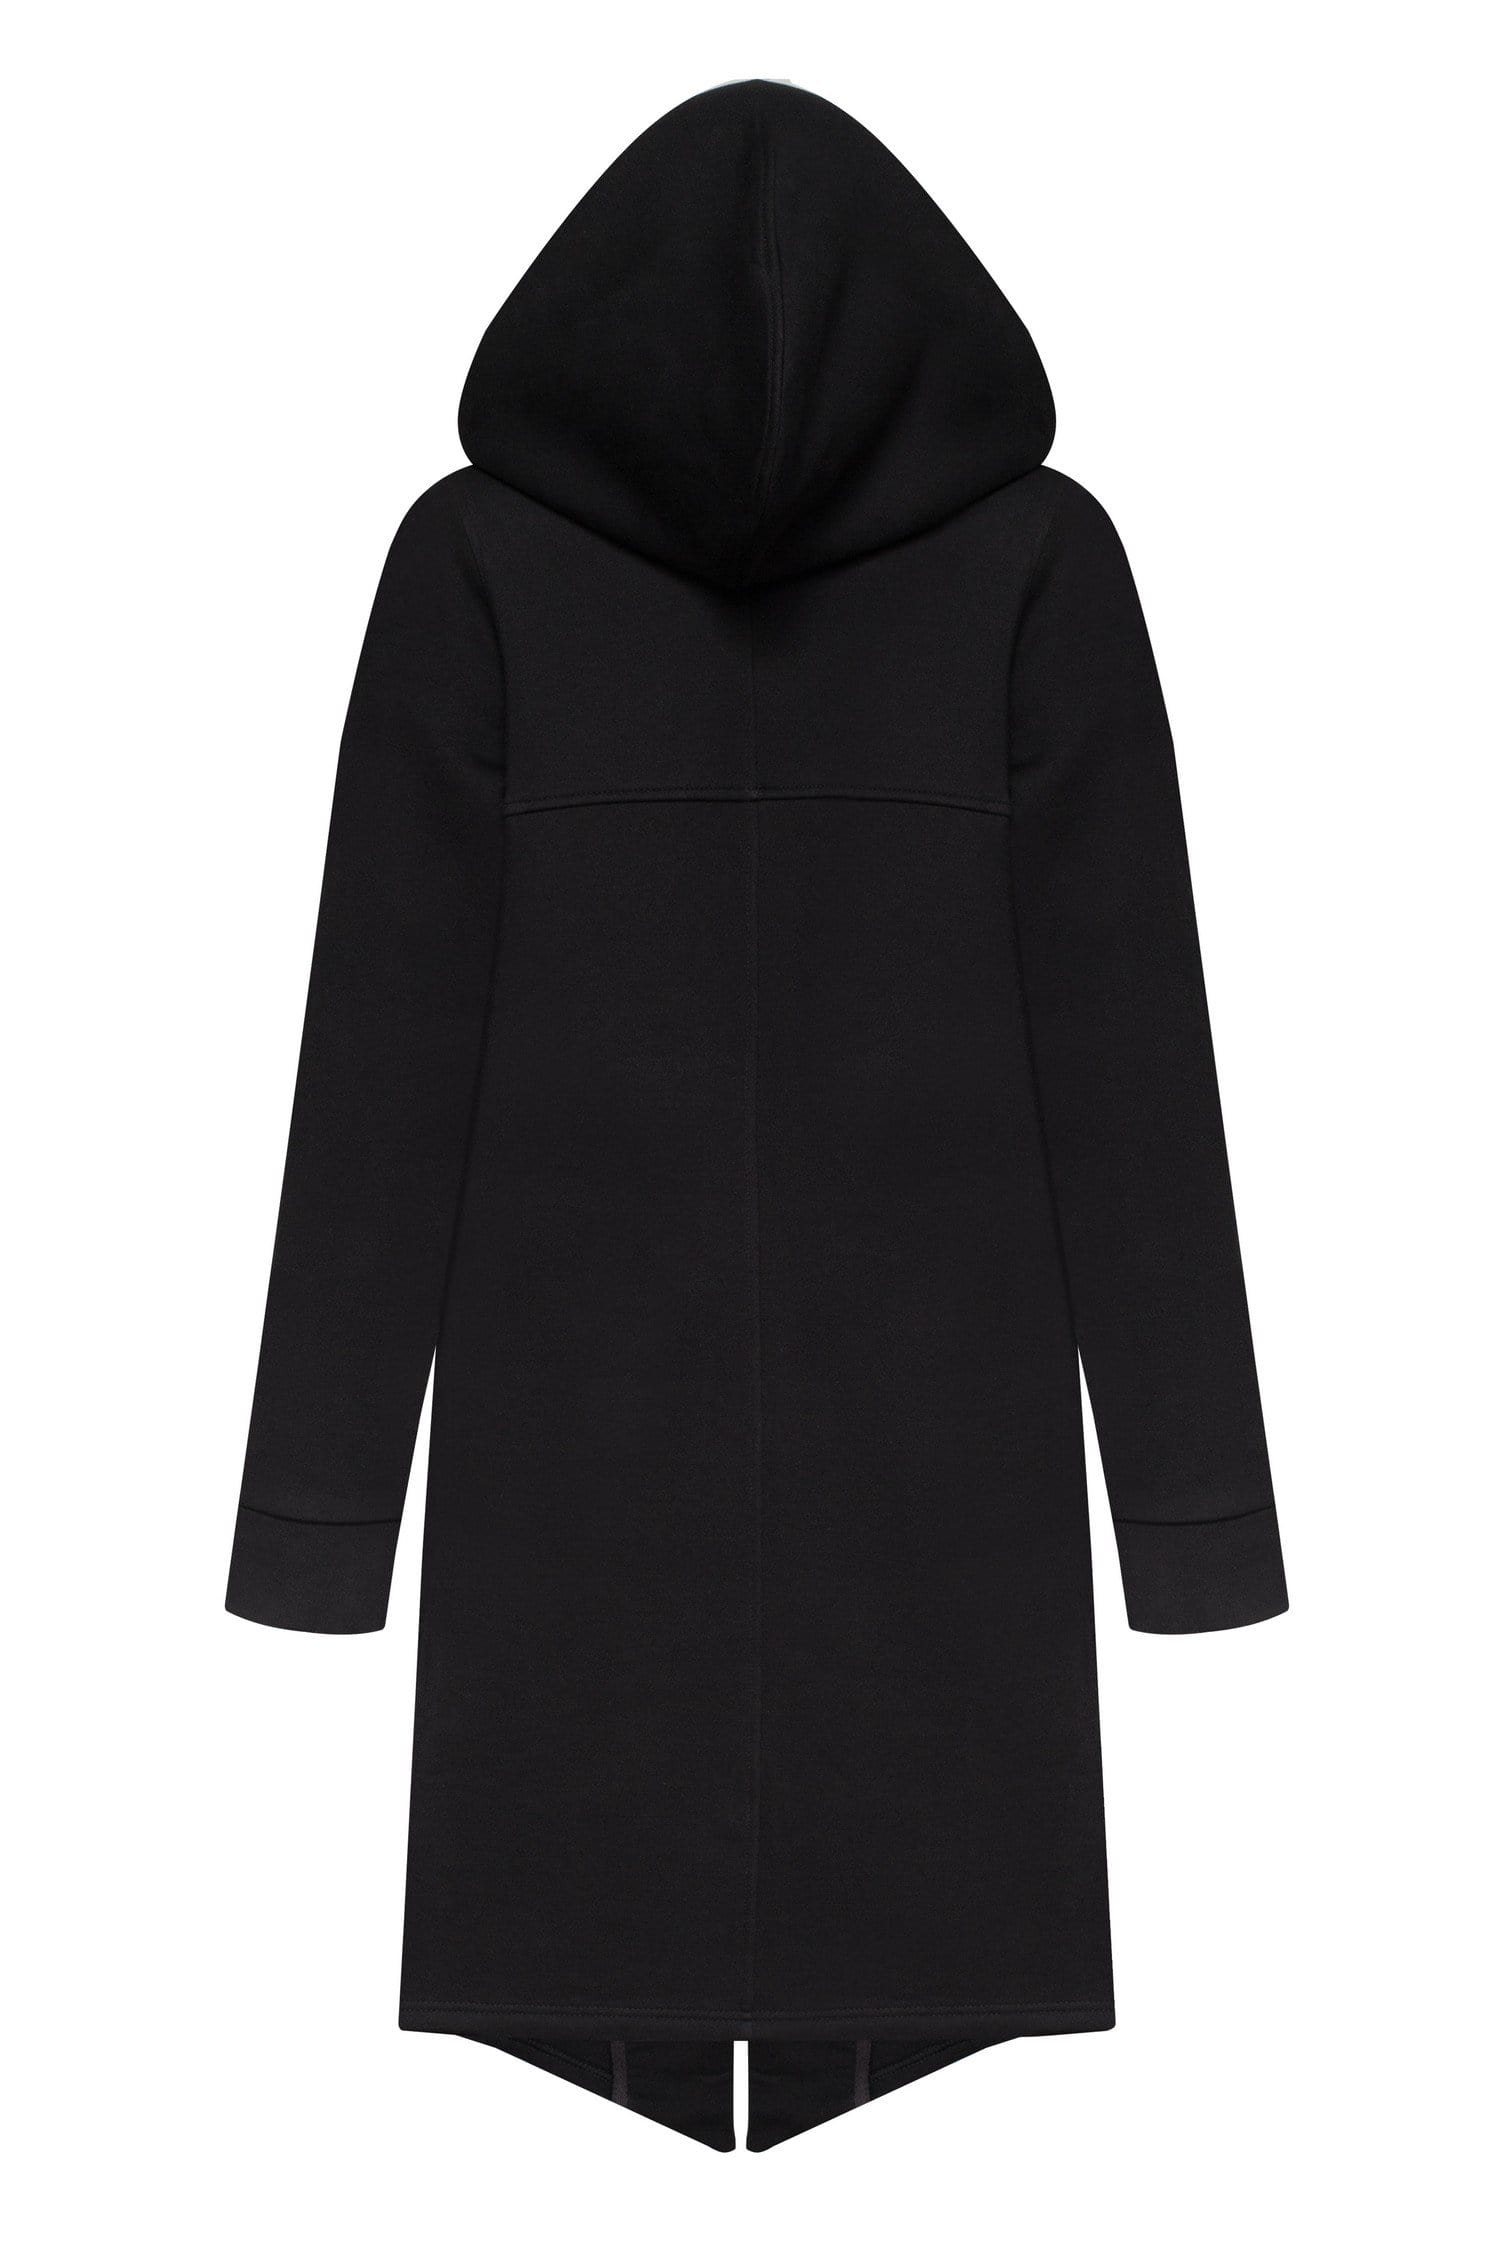 MDNT45 Coats & Jackets for Man Black hooded coat